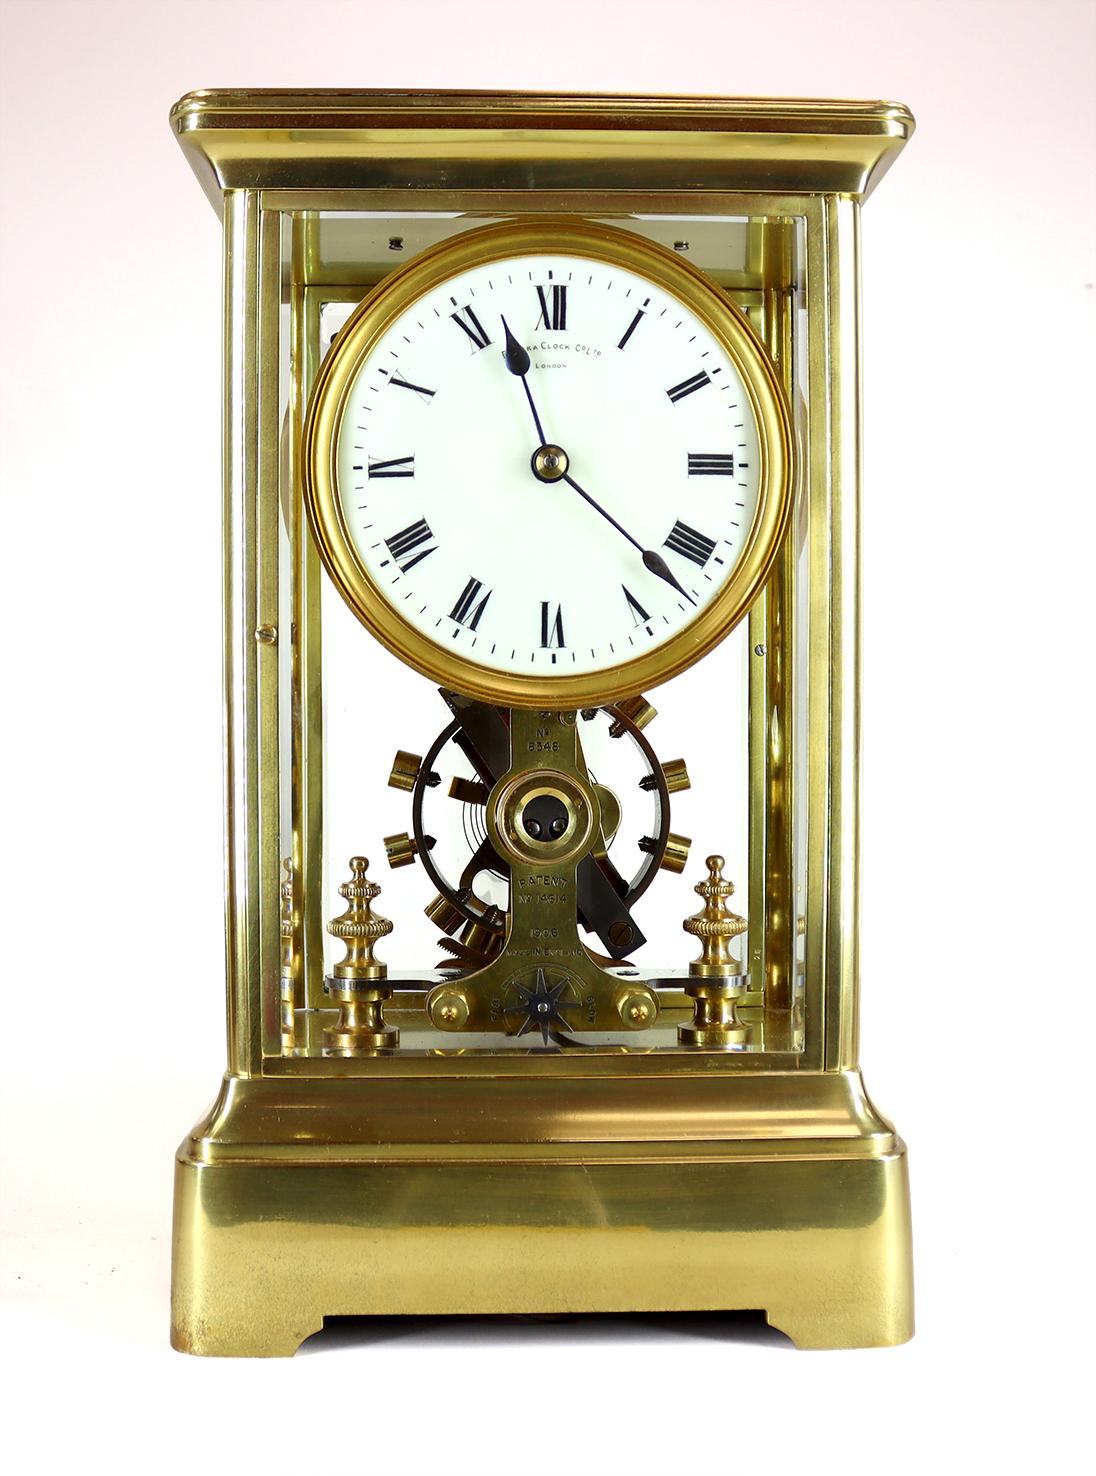 Ein hervorragendes Beispiel für eine Eureka-Uhr aus dem Jahr 1912.

Das elektromagnetische Uhrwerk wird durch eine große, langsam schwingende bimetallische Unruh reguliert. Mit der richtigen Batterie läuft diese Uhr für die Dauer der